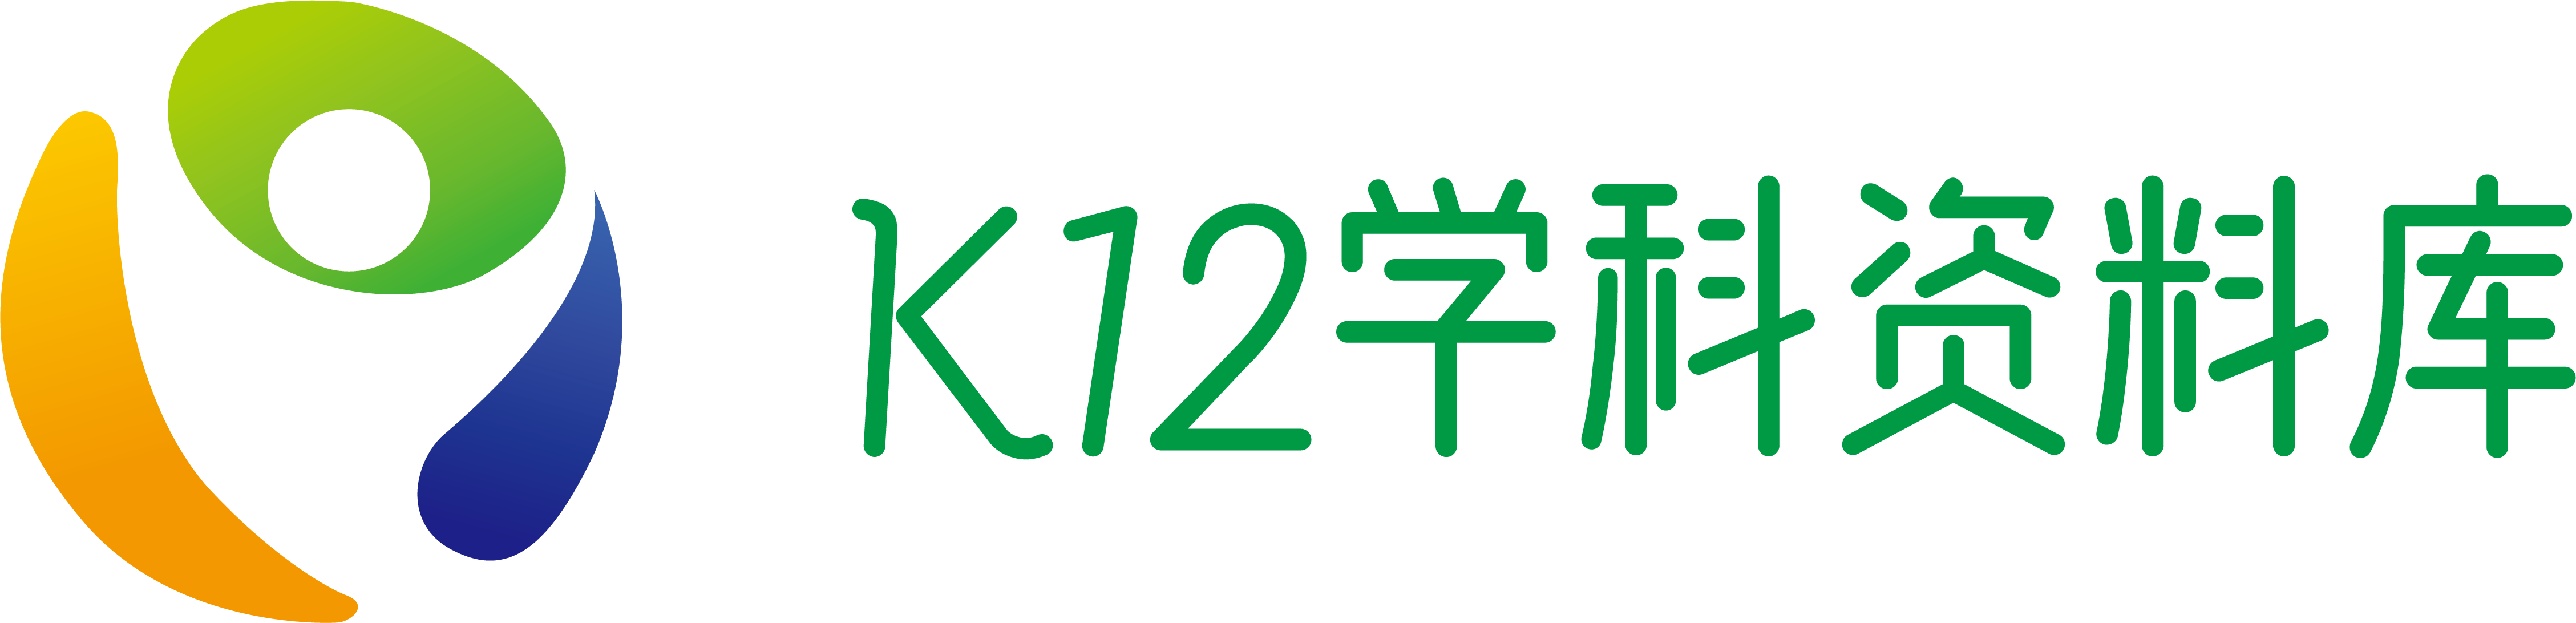 K12学科资料库